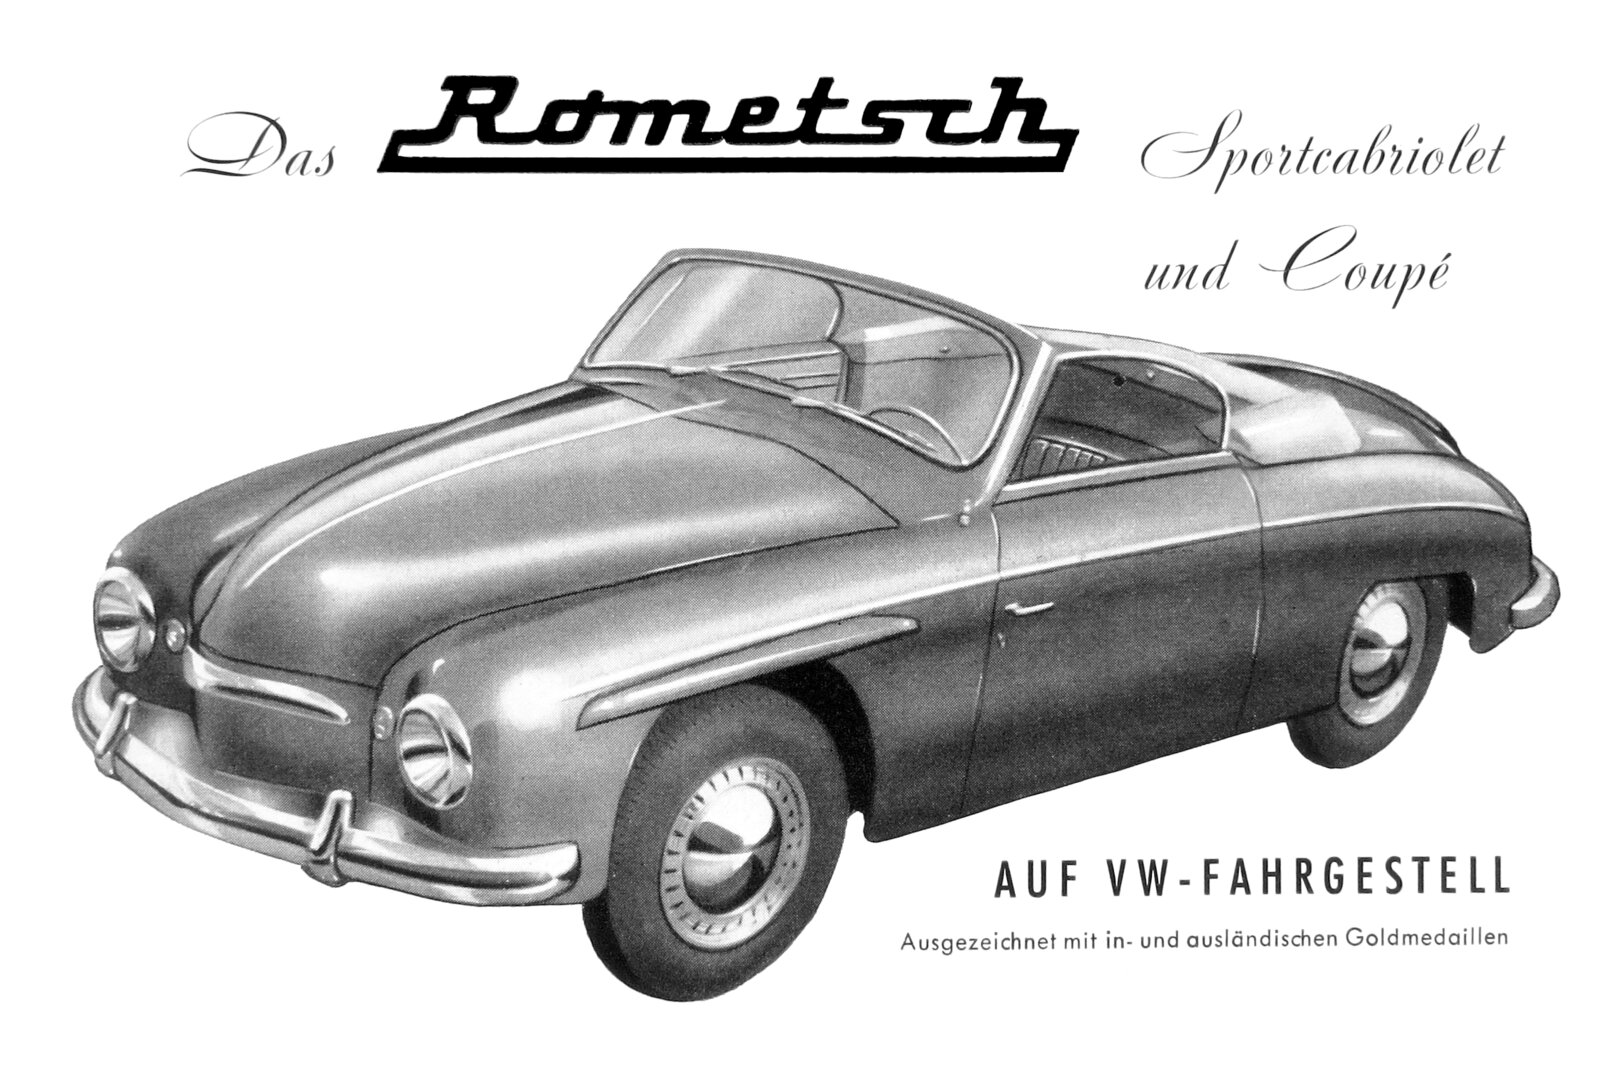 Coche del día: Volkswagen Rometsch